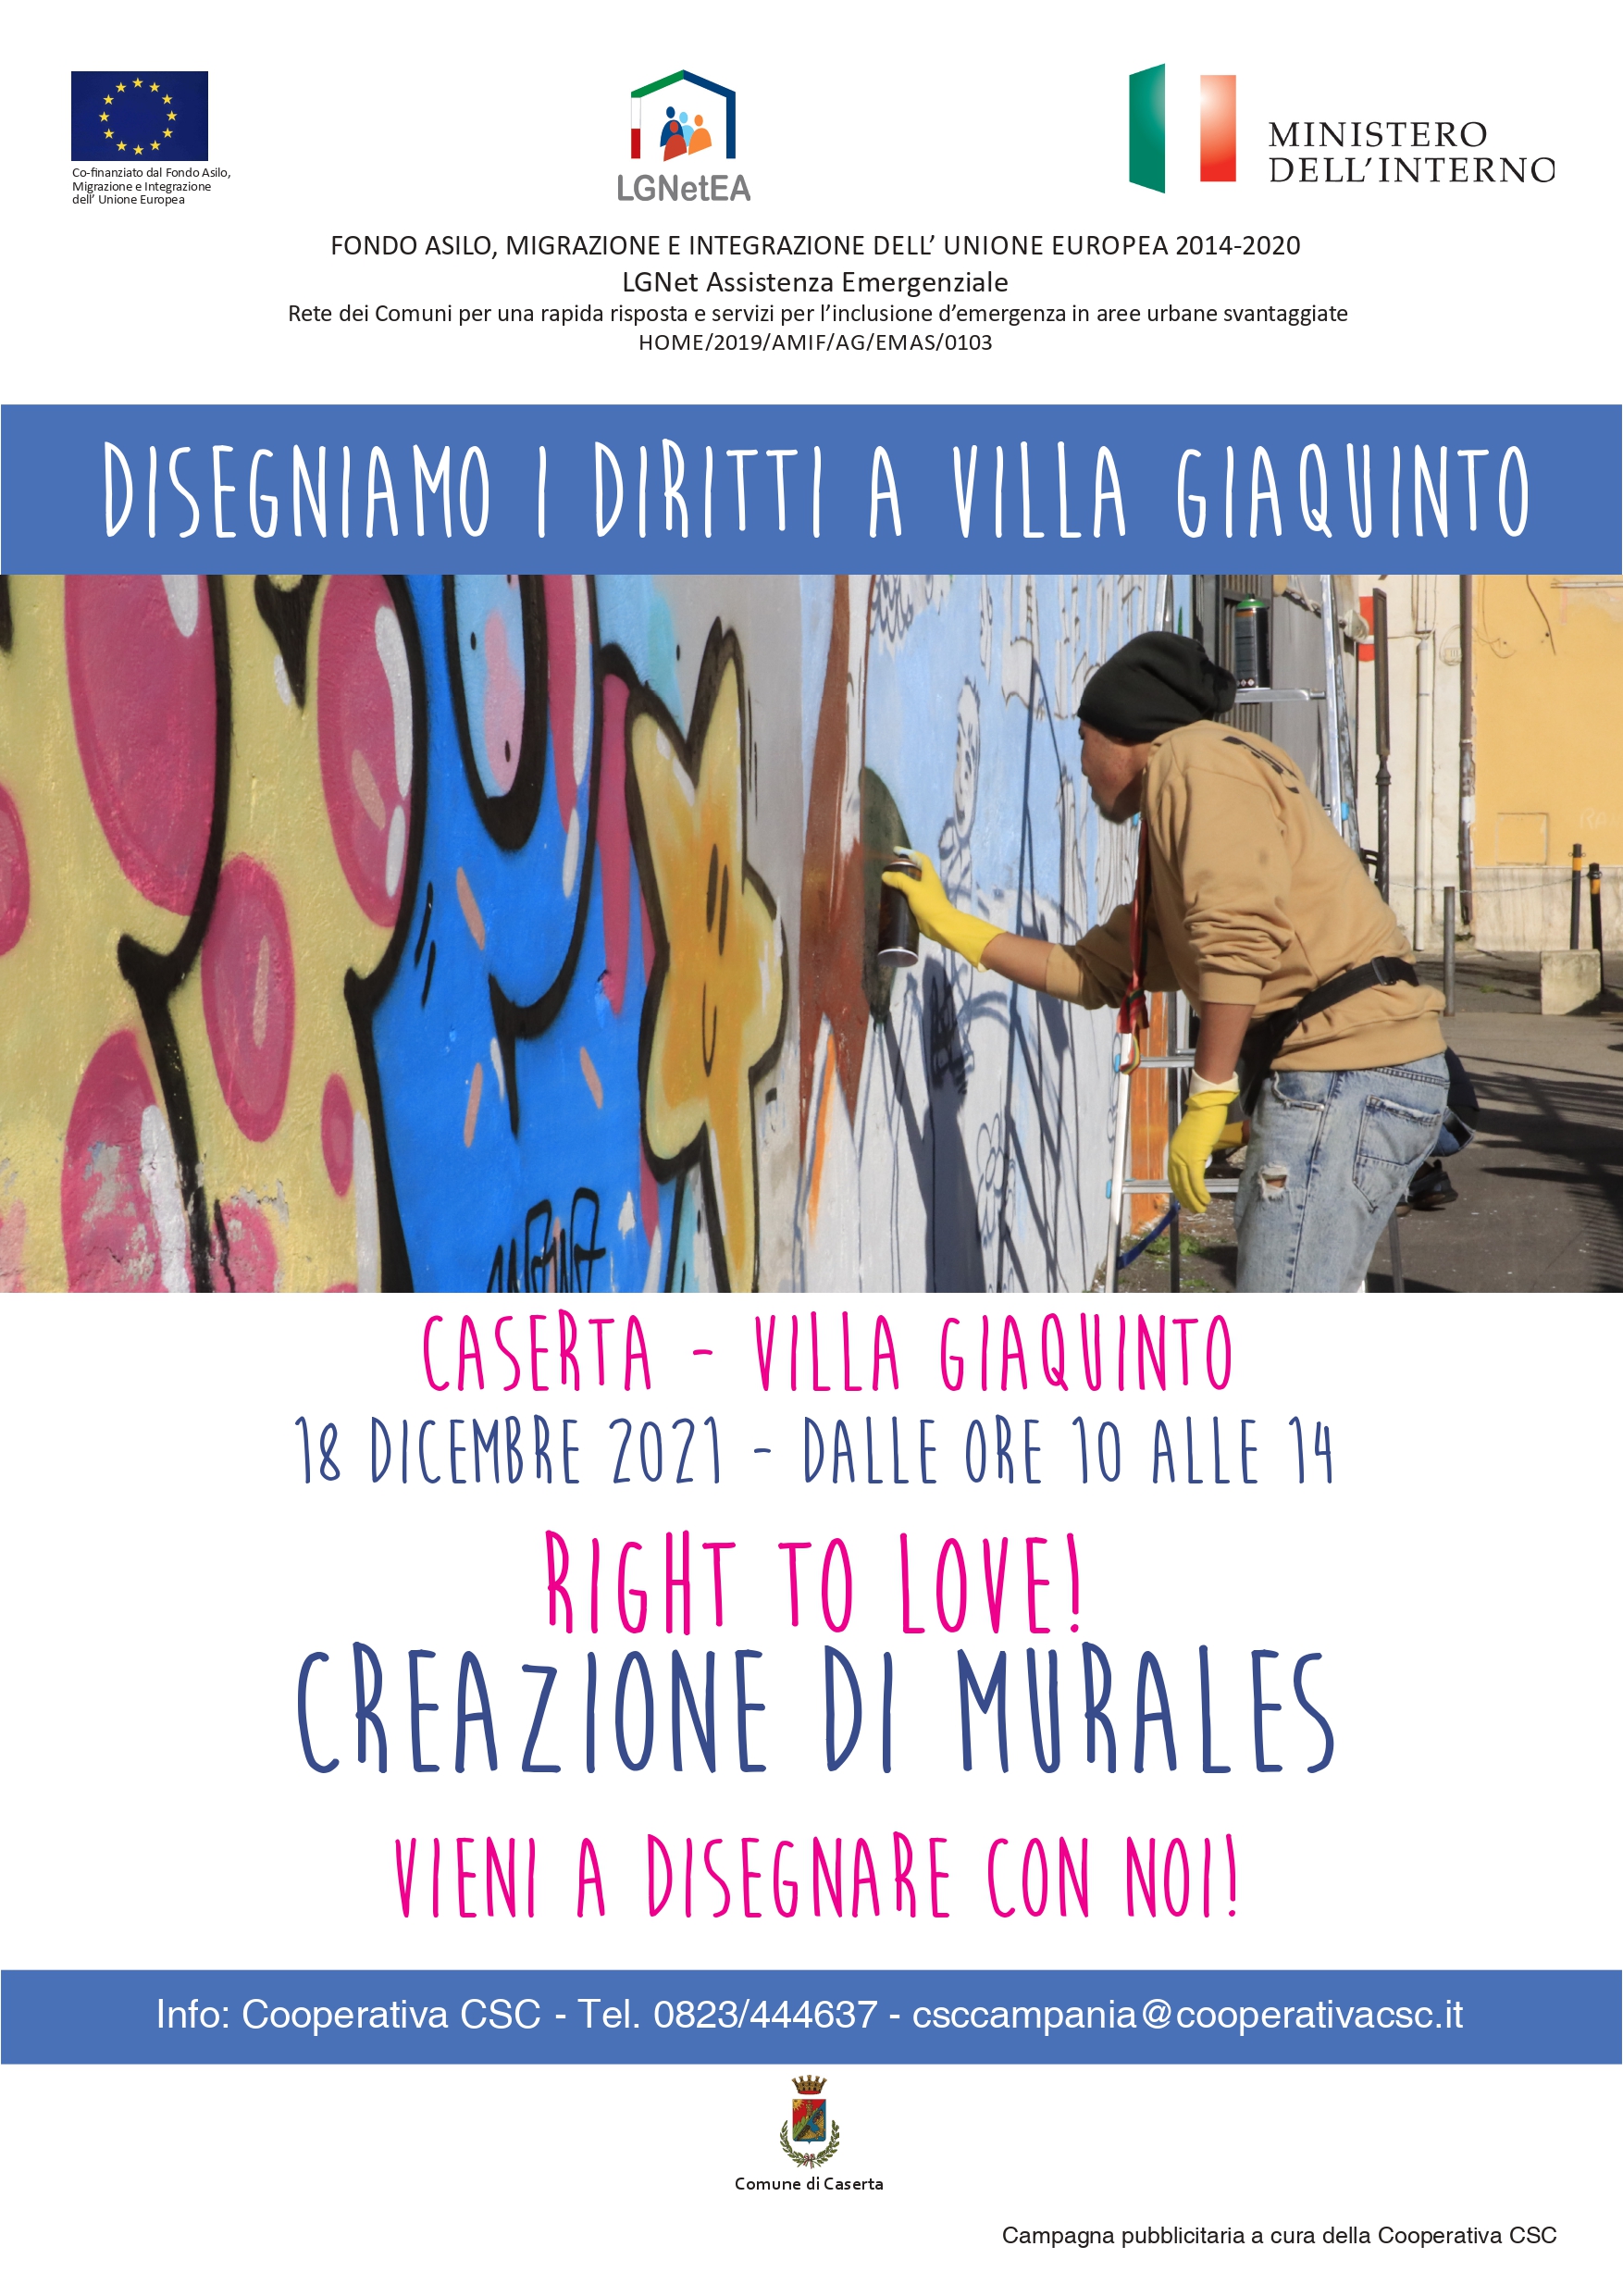 Disegniamo diritti a Villa Giaquinto: appuntamento il 18 dicembre con il murale Right to Love!